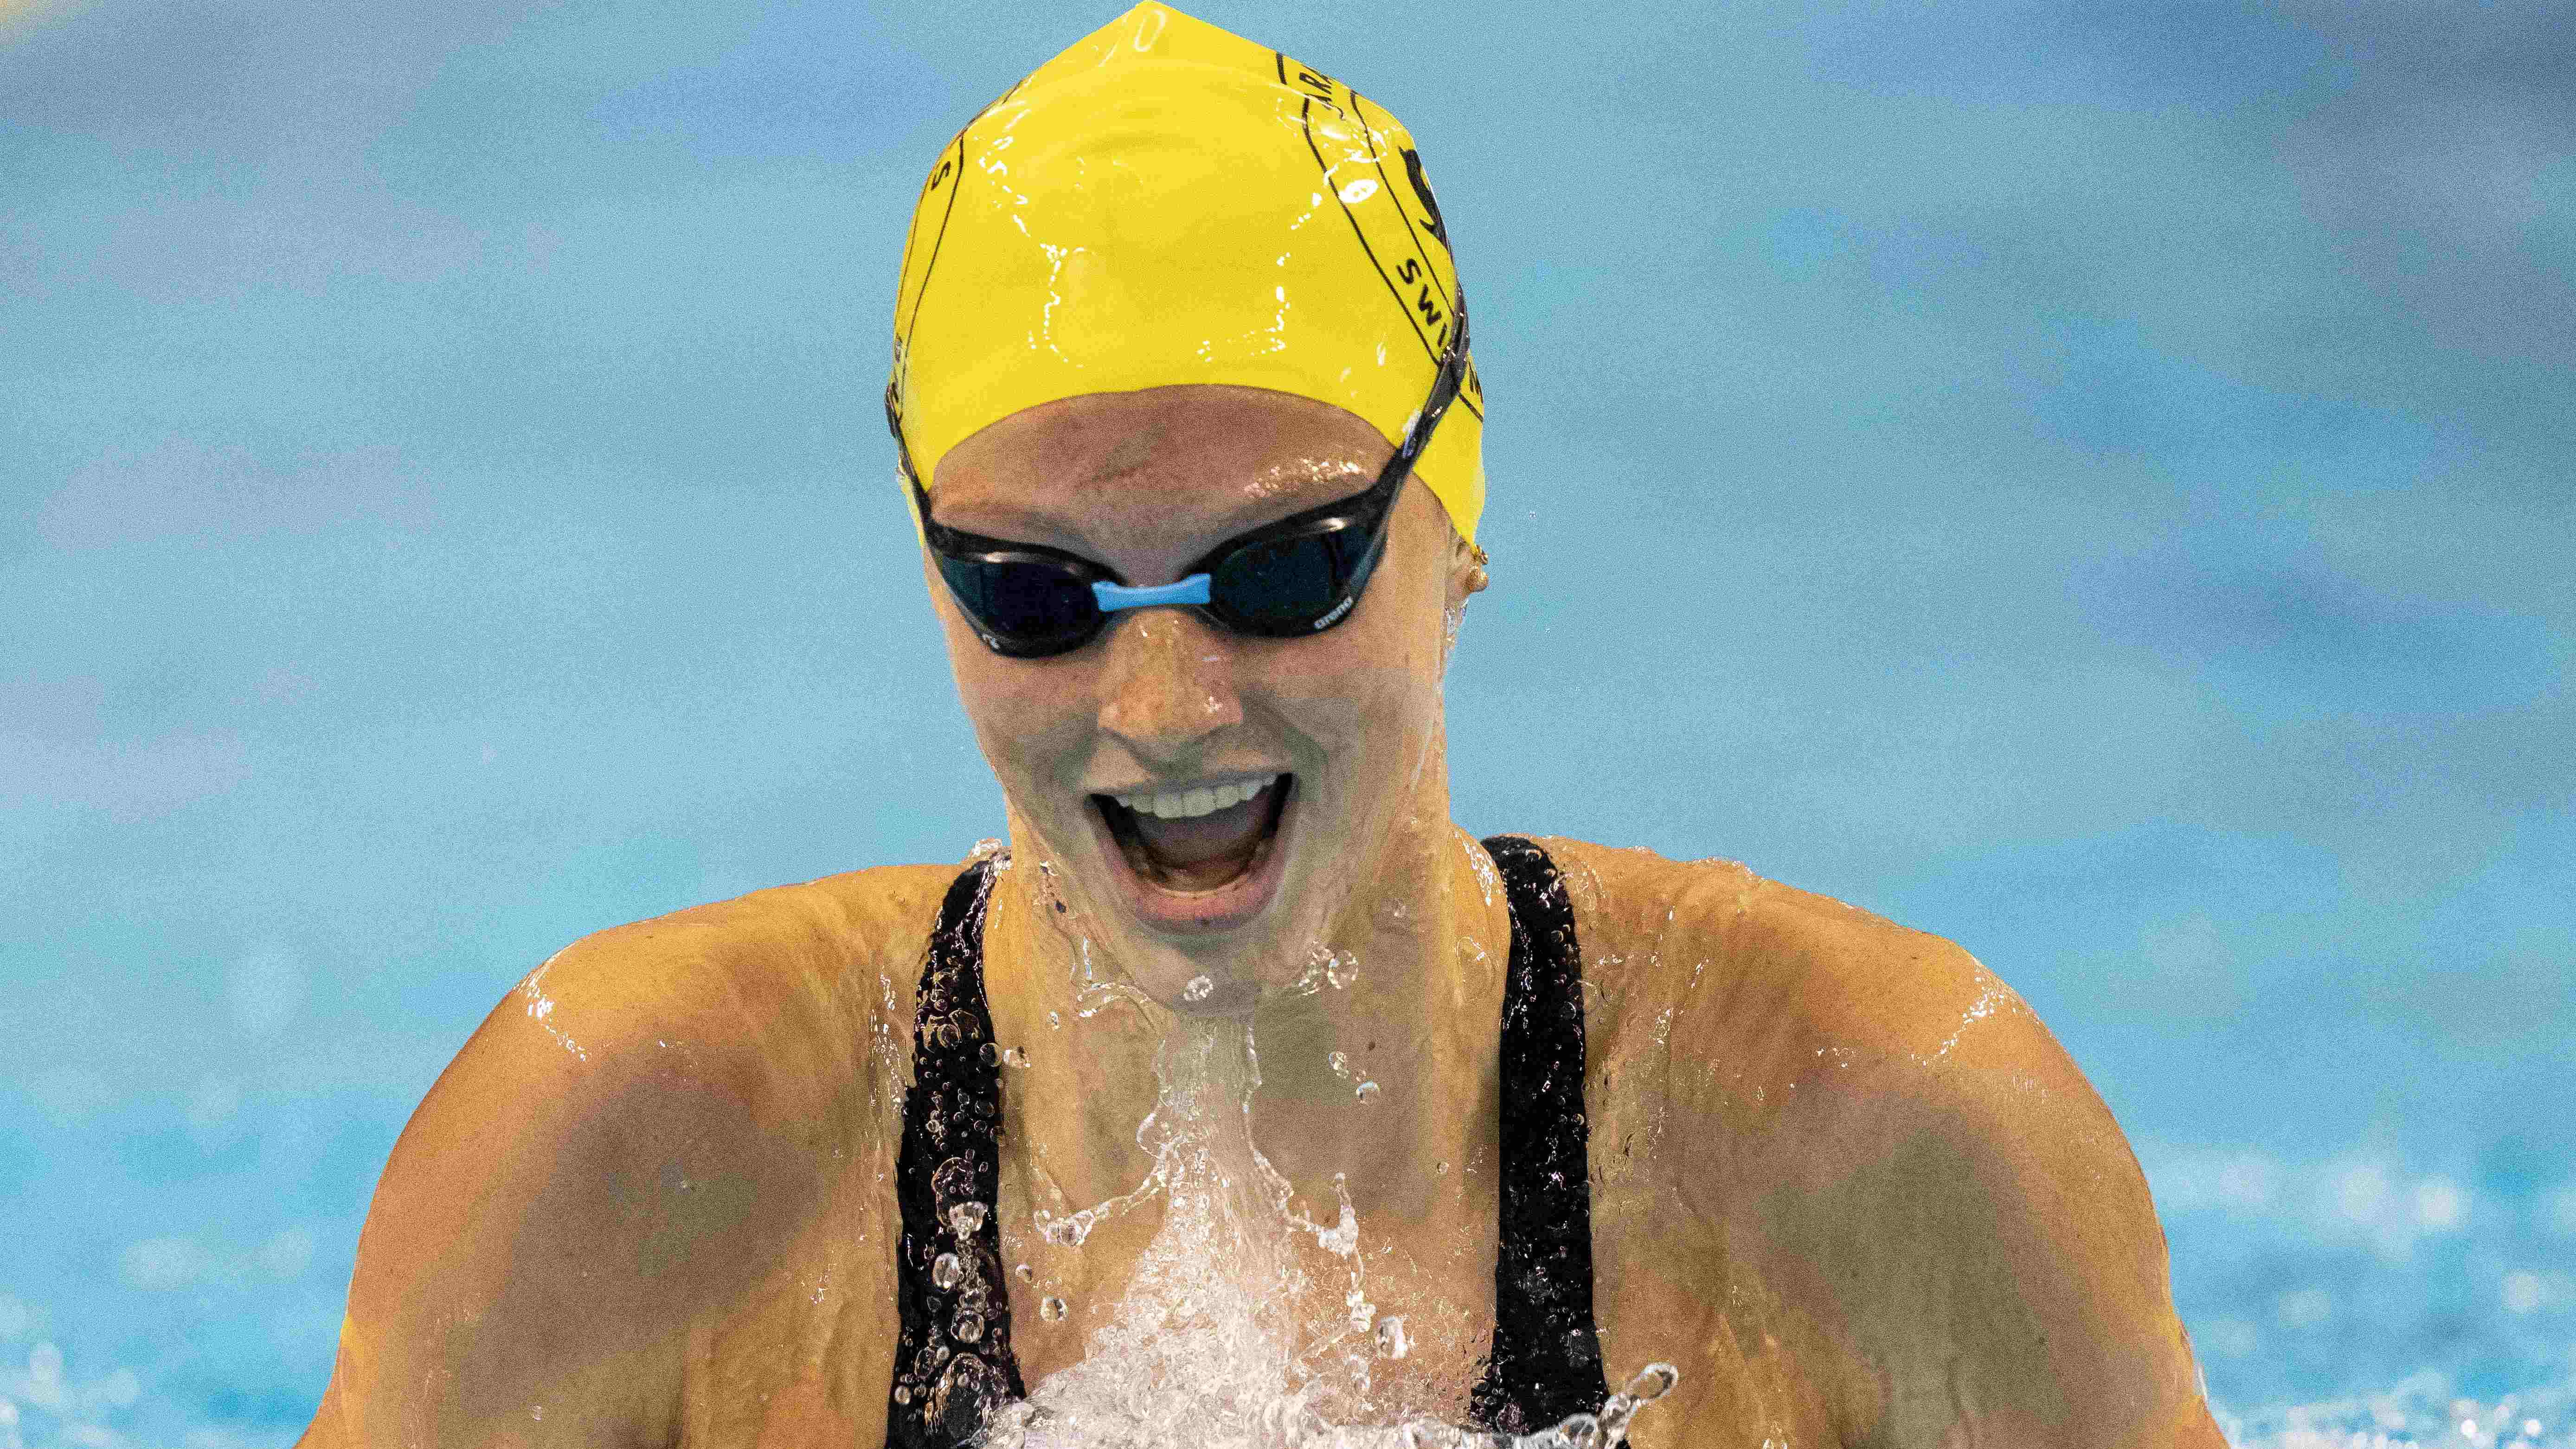 Канадская пловчиха установила новый мировой рекорд на 400 метров комплексным плаванием